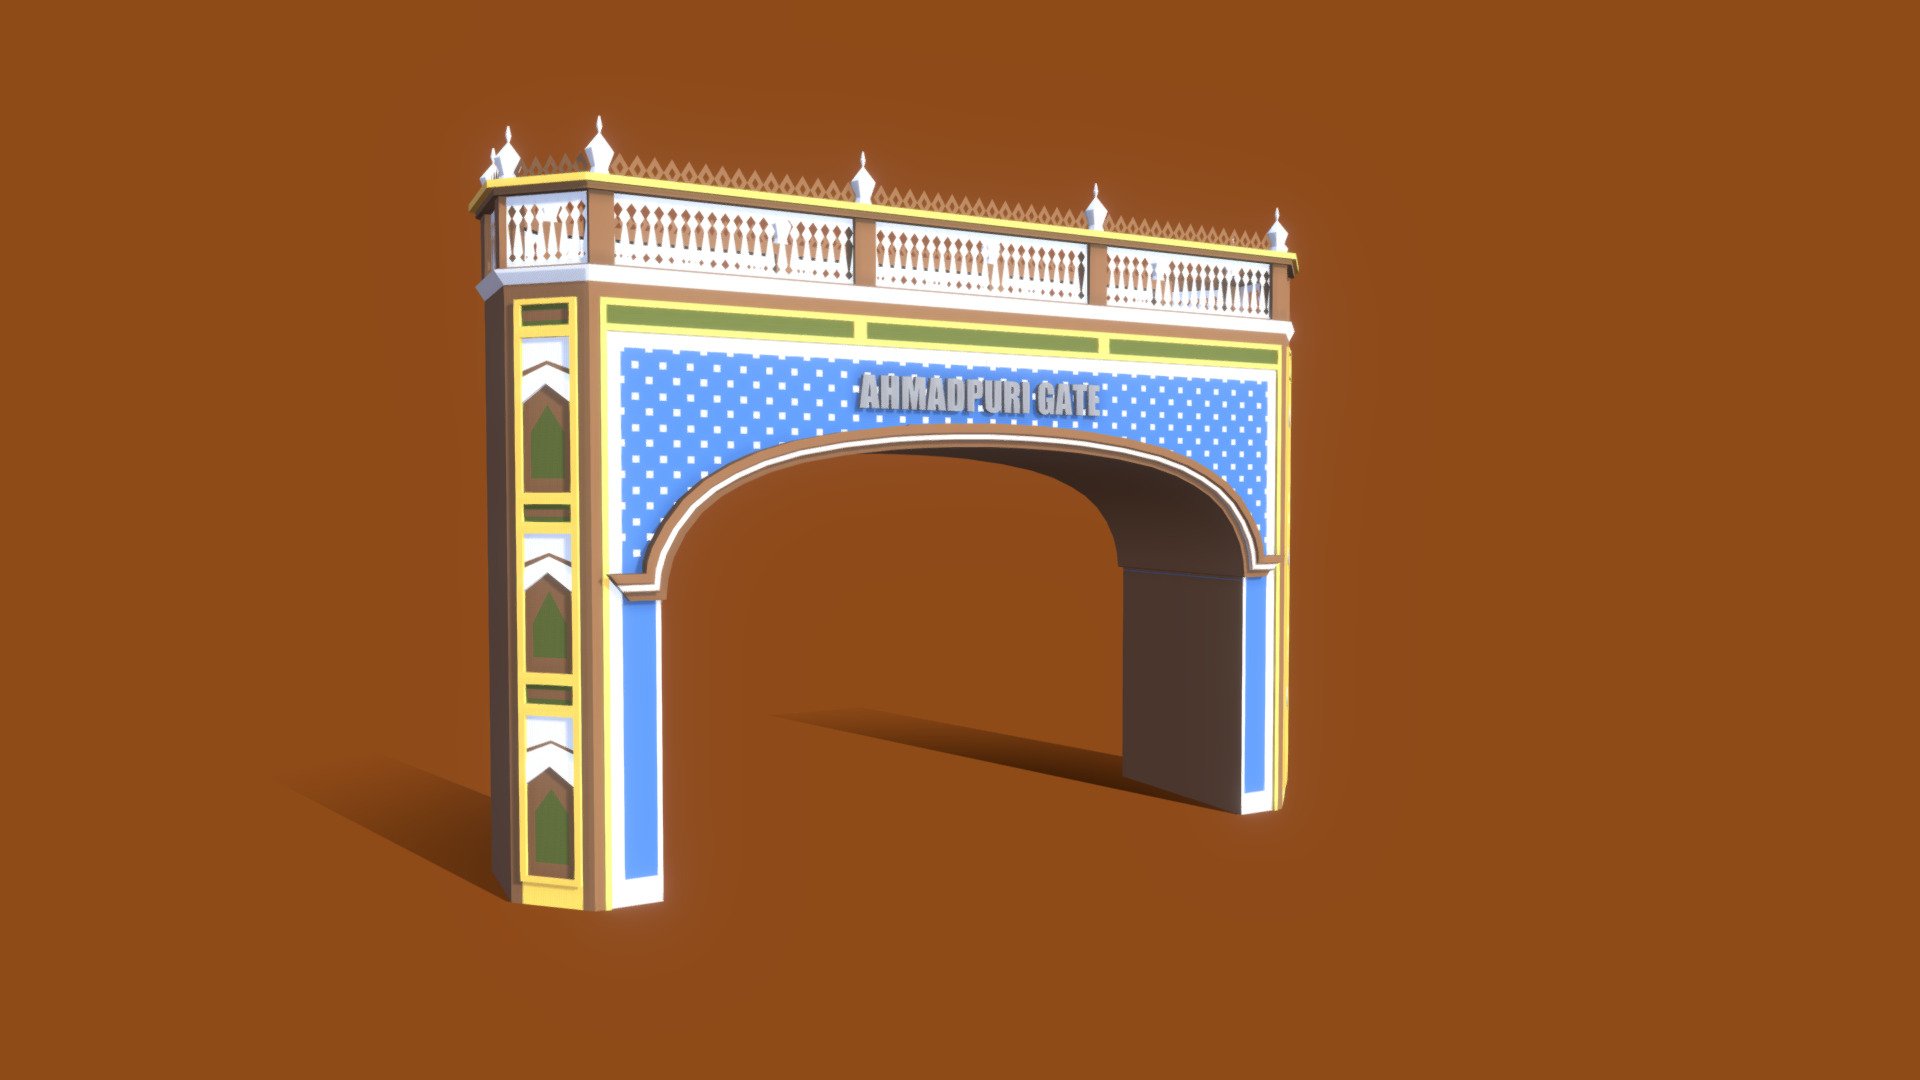 Ahmadpuri Gate Bahawalpur - lowpoly - Ahmadpuri Gate Bahawalpur lowpoly - 3D model by nabeelashrafphotography 3d model